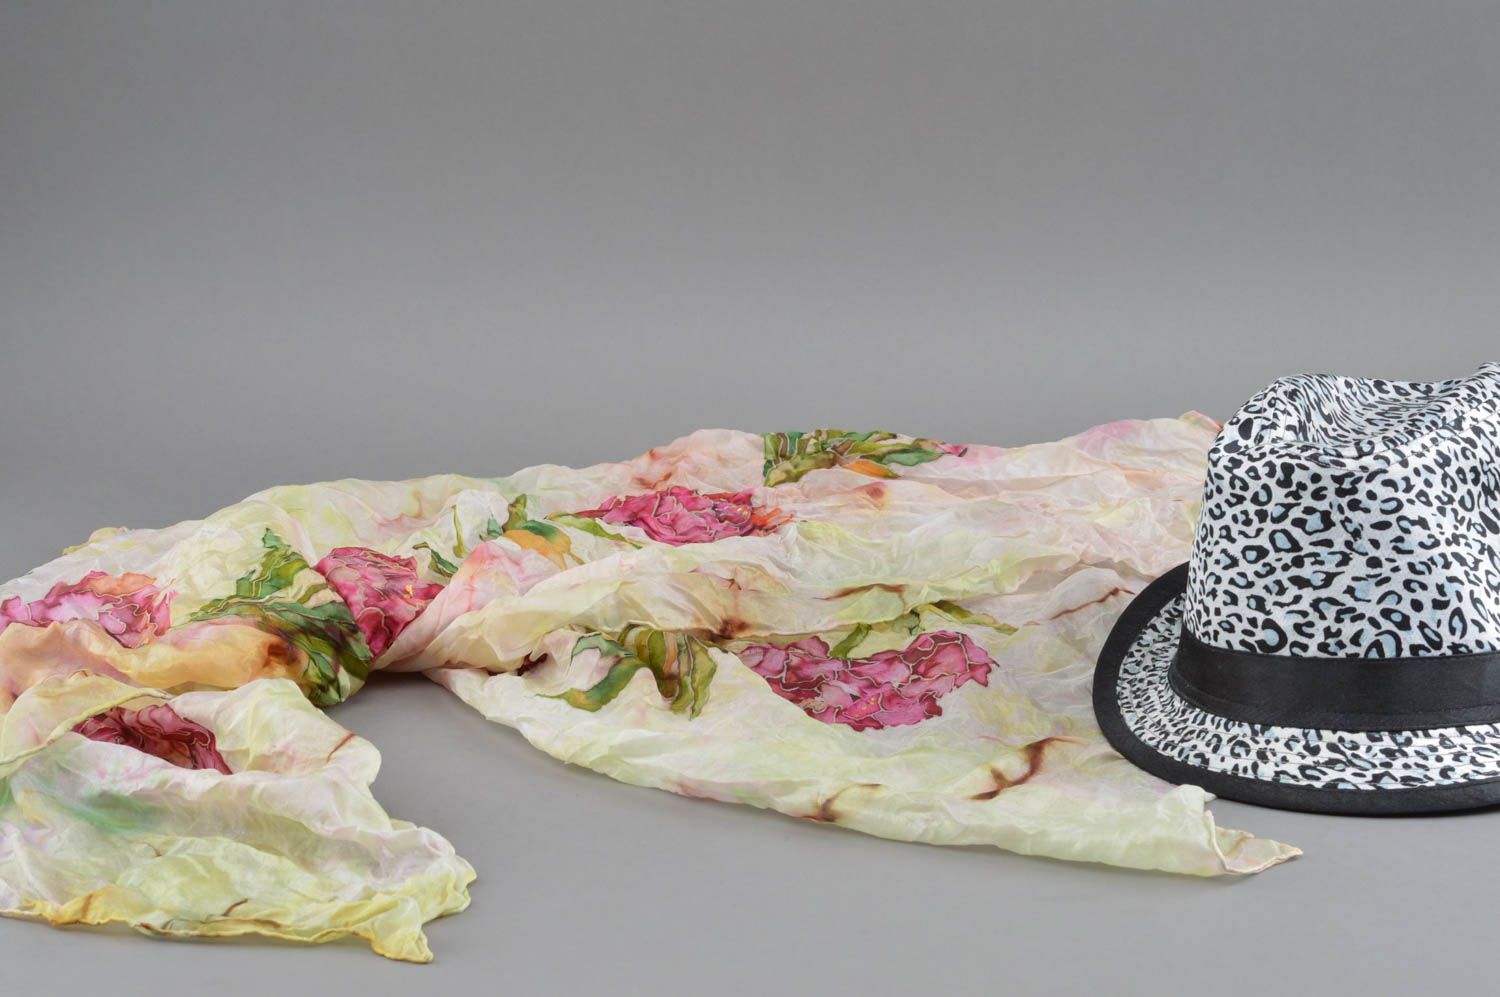 Шелковая шаль с цветами расписанная в технике холодного батика ручной работы фото 1